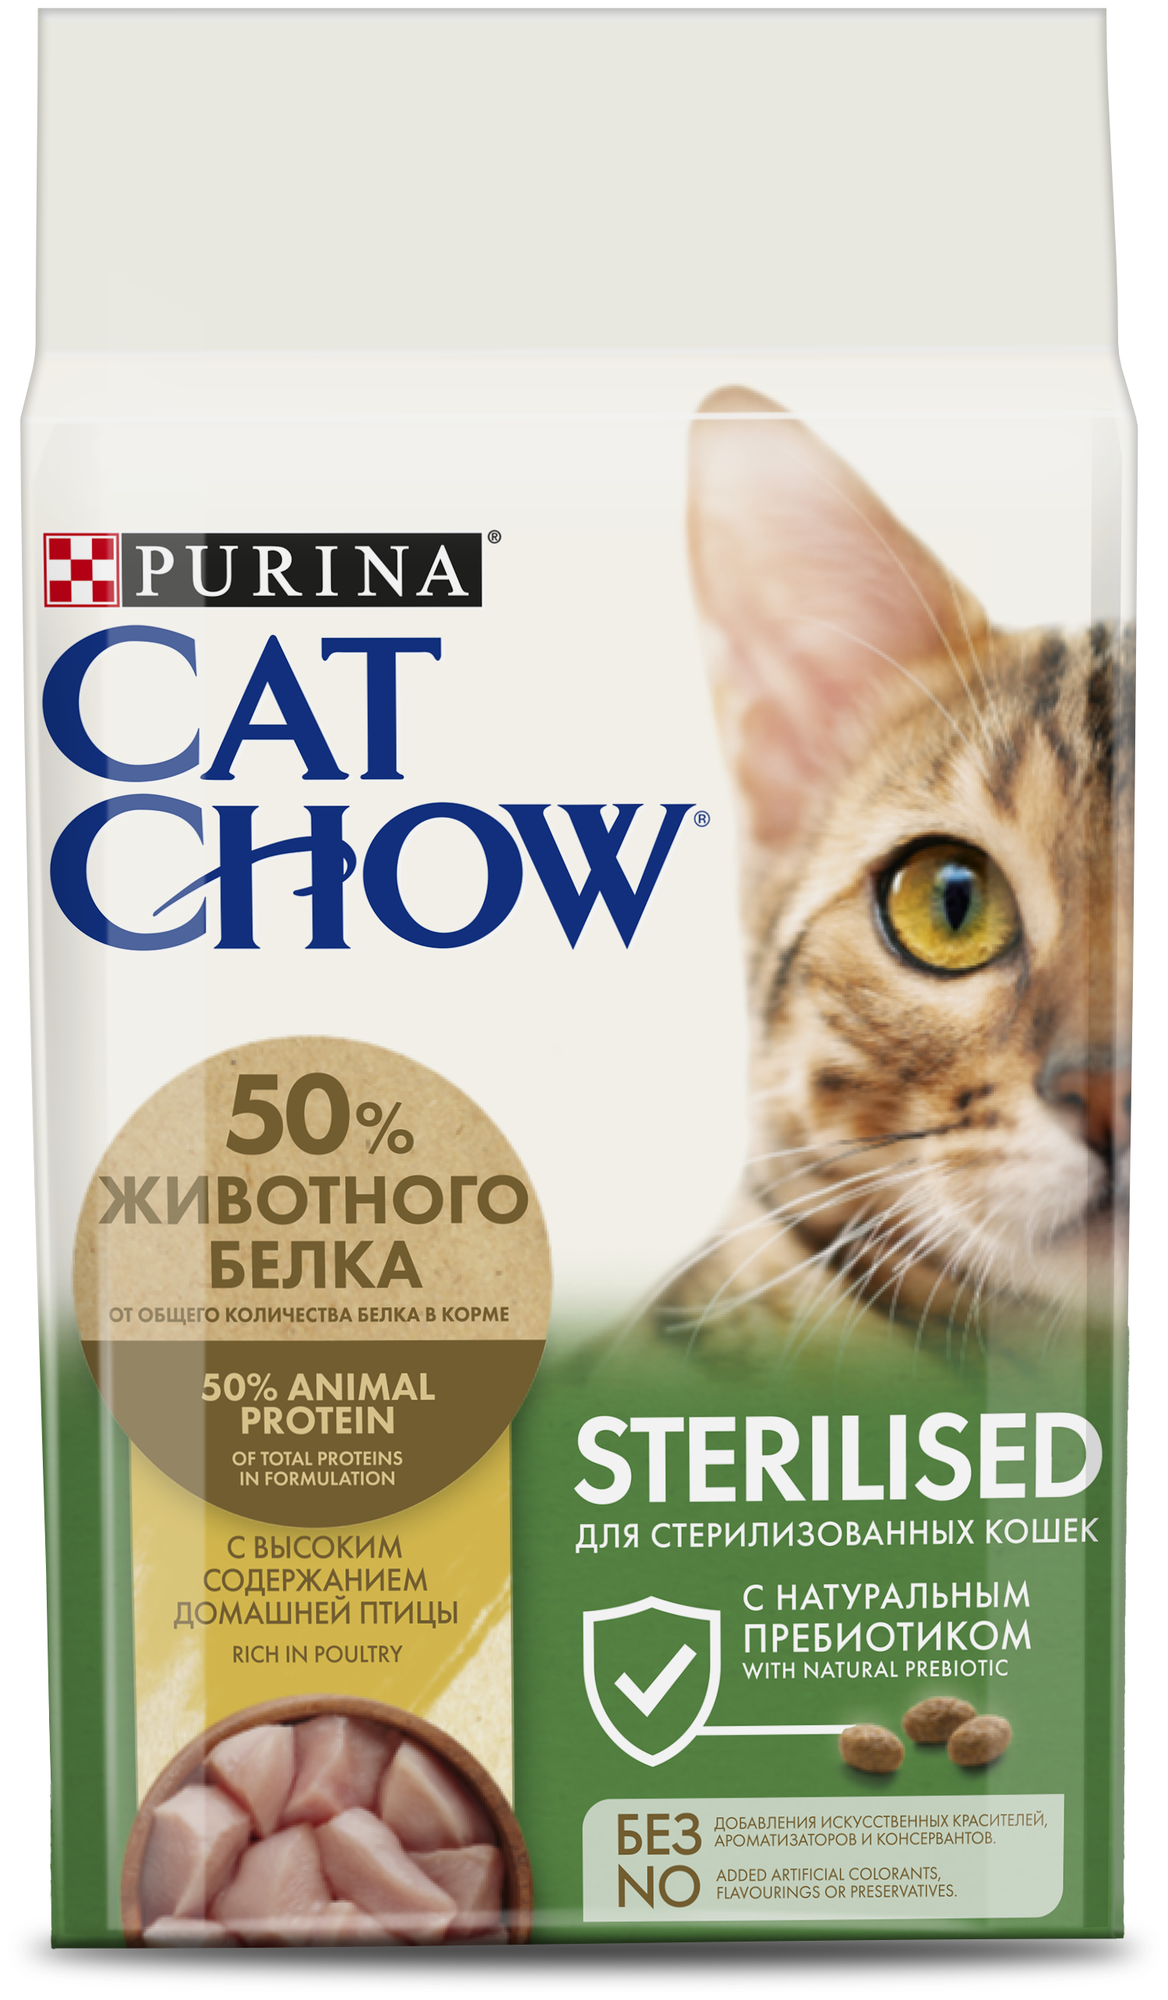 Сухой корм для стерилизованных кошек и кастрированных котов CAT CHOW с высоким содержанием домашней птицы